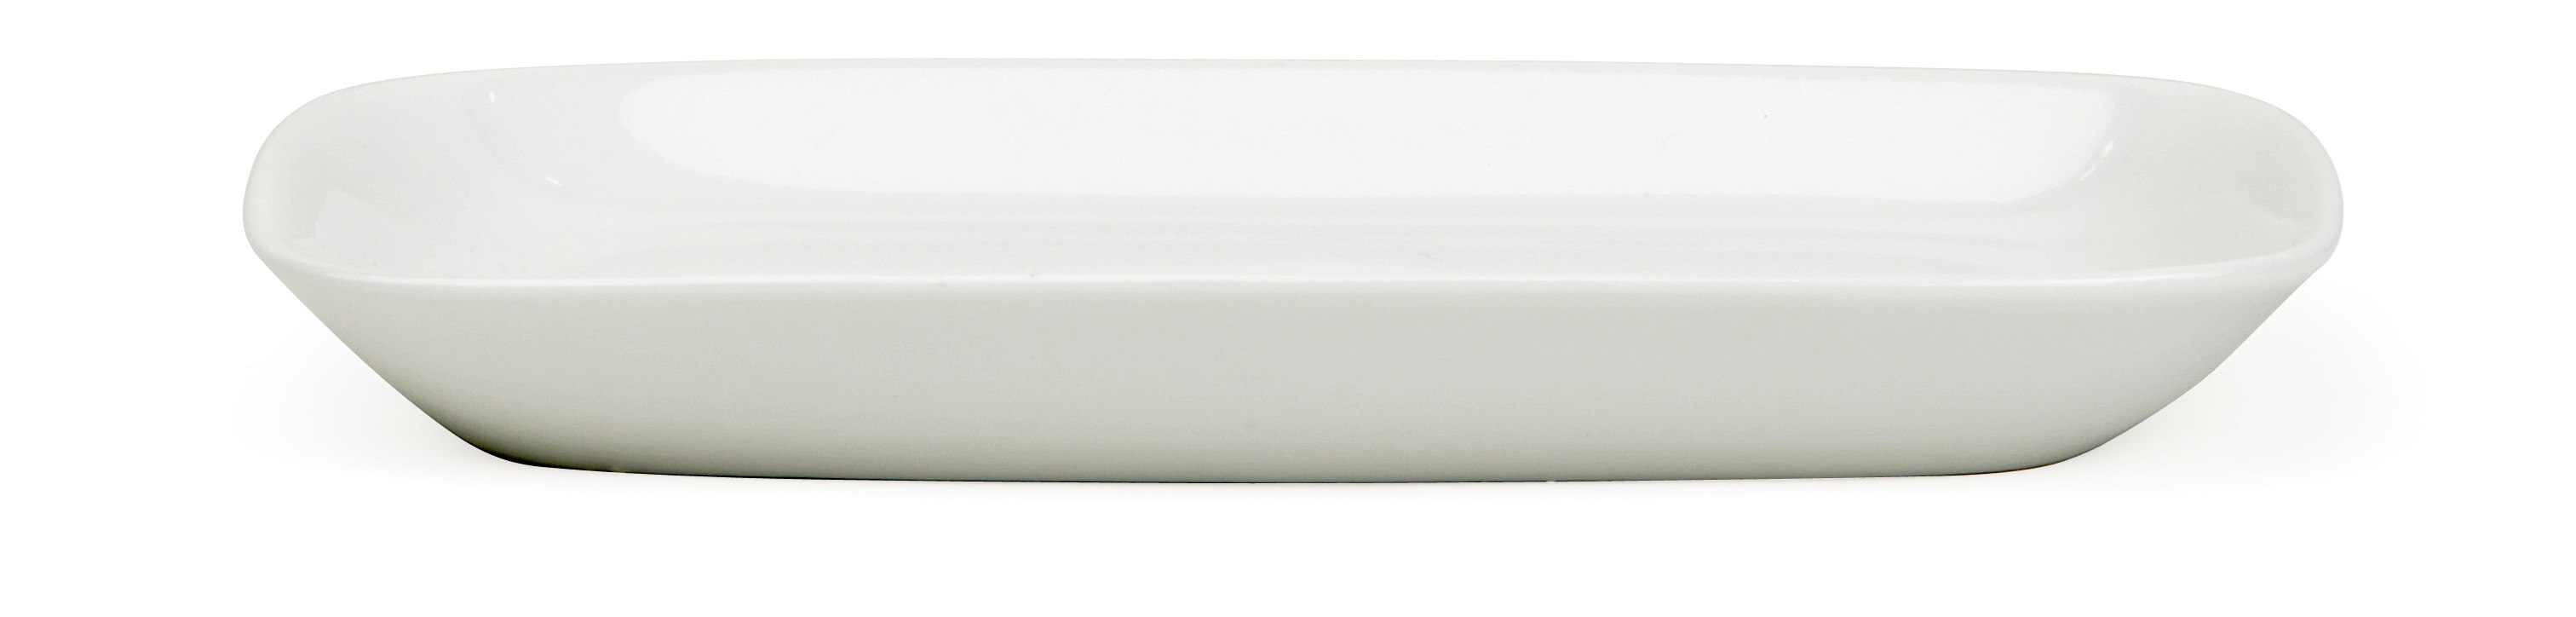 Serveringsfat rektangulär 13X9 cm förstärkt benporslin vit